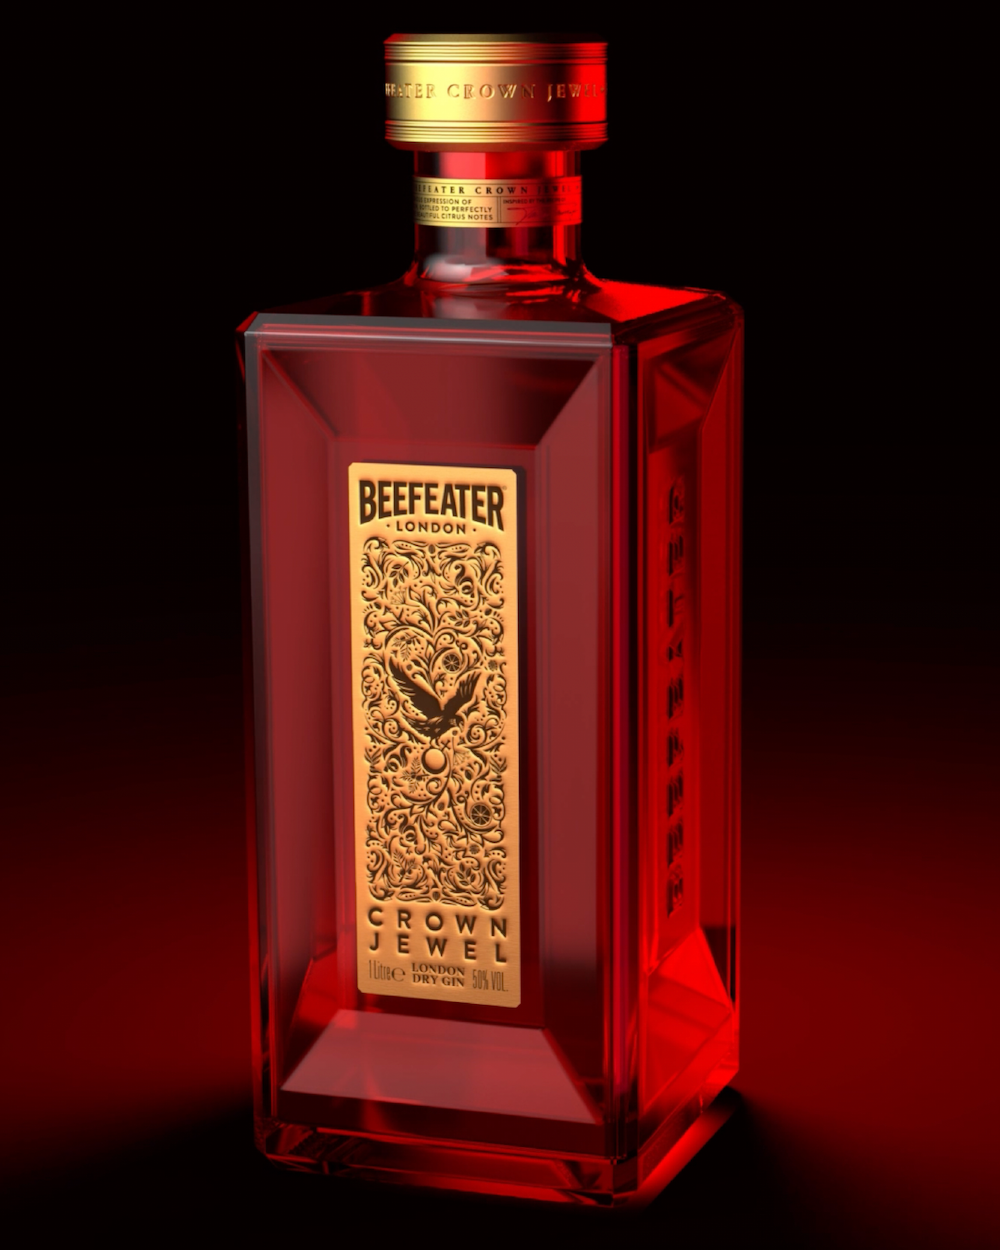 imagen 4 de Beefeater Crown Jewel: cócteles propios de un rey de Inglaterra.